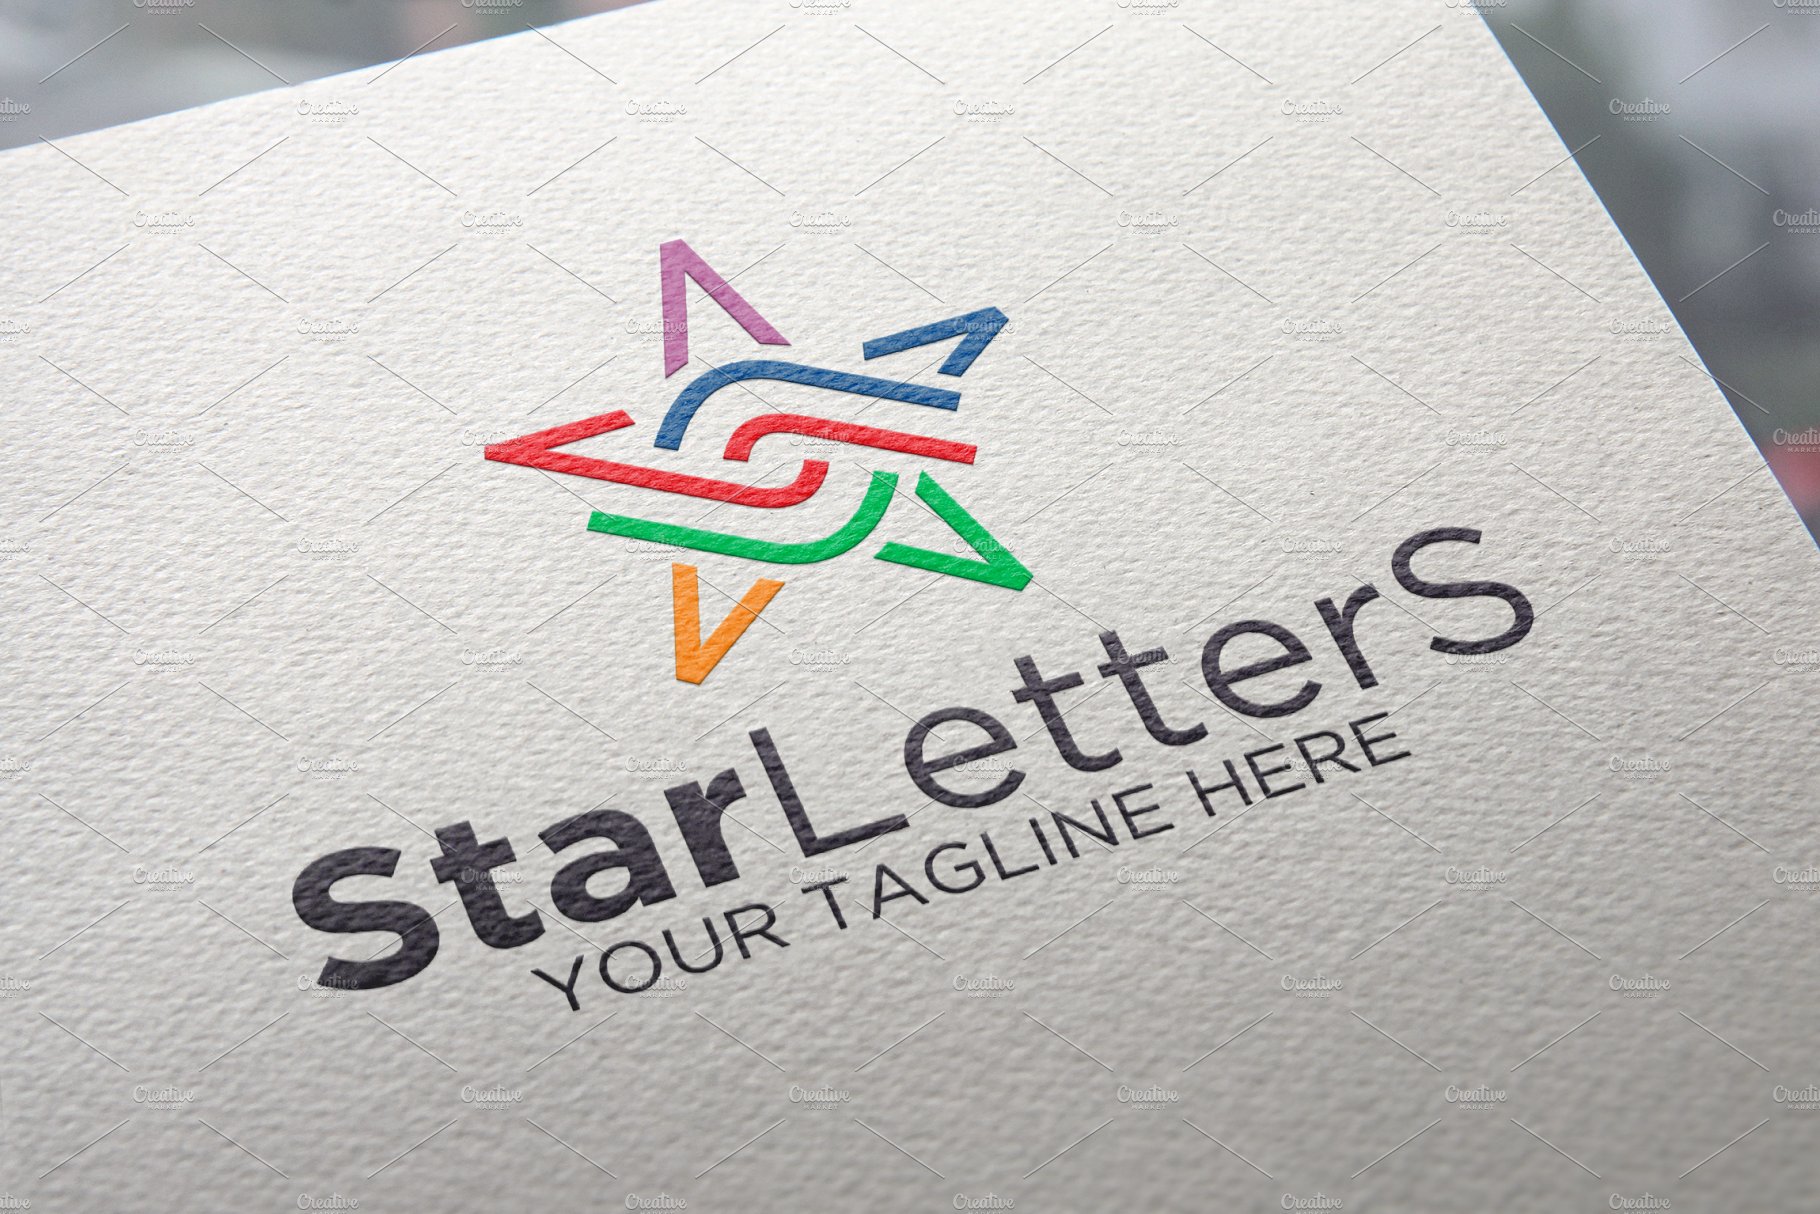 Stars Letter Logo cover image.